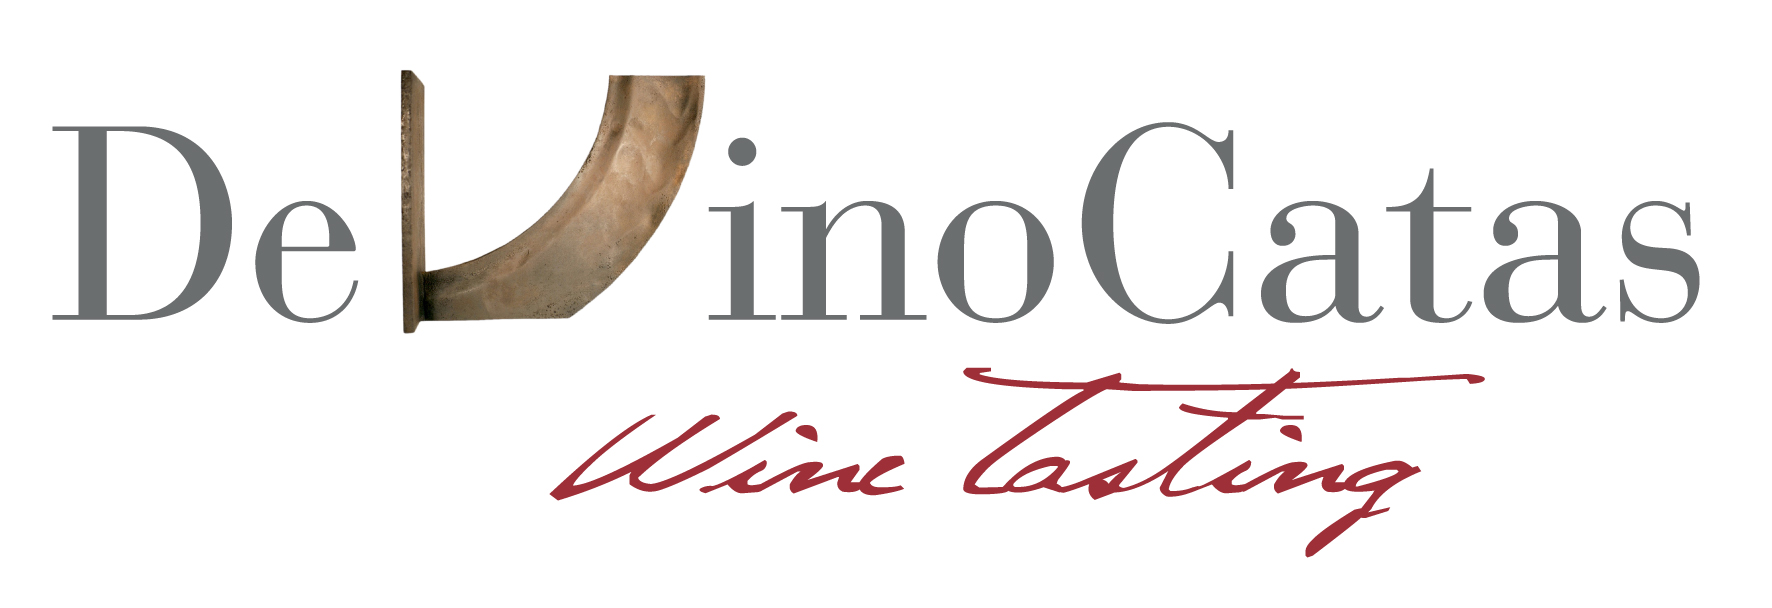 DeVinoCatas I Catas de vino online y eventos vinícolas para particulares y empresas